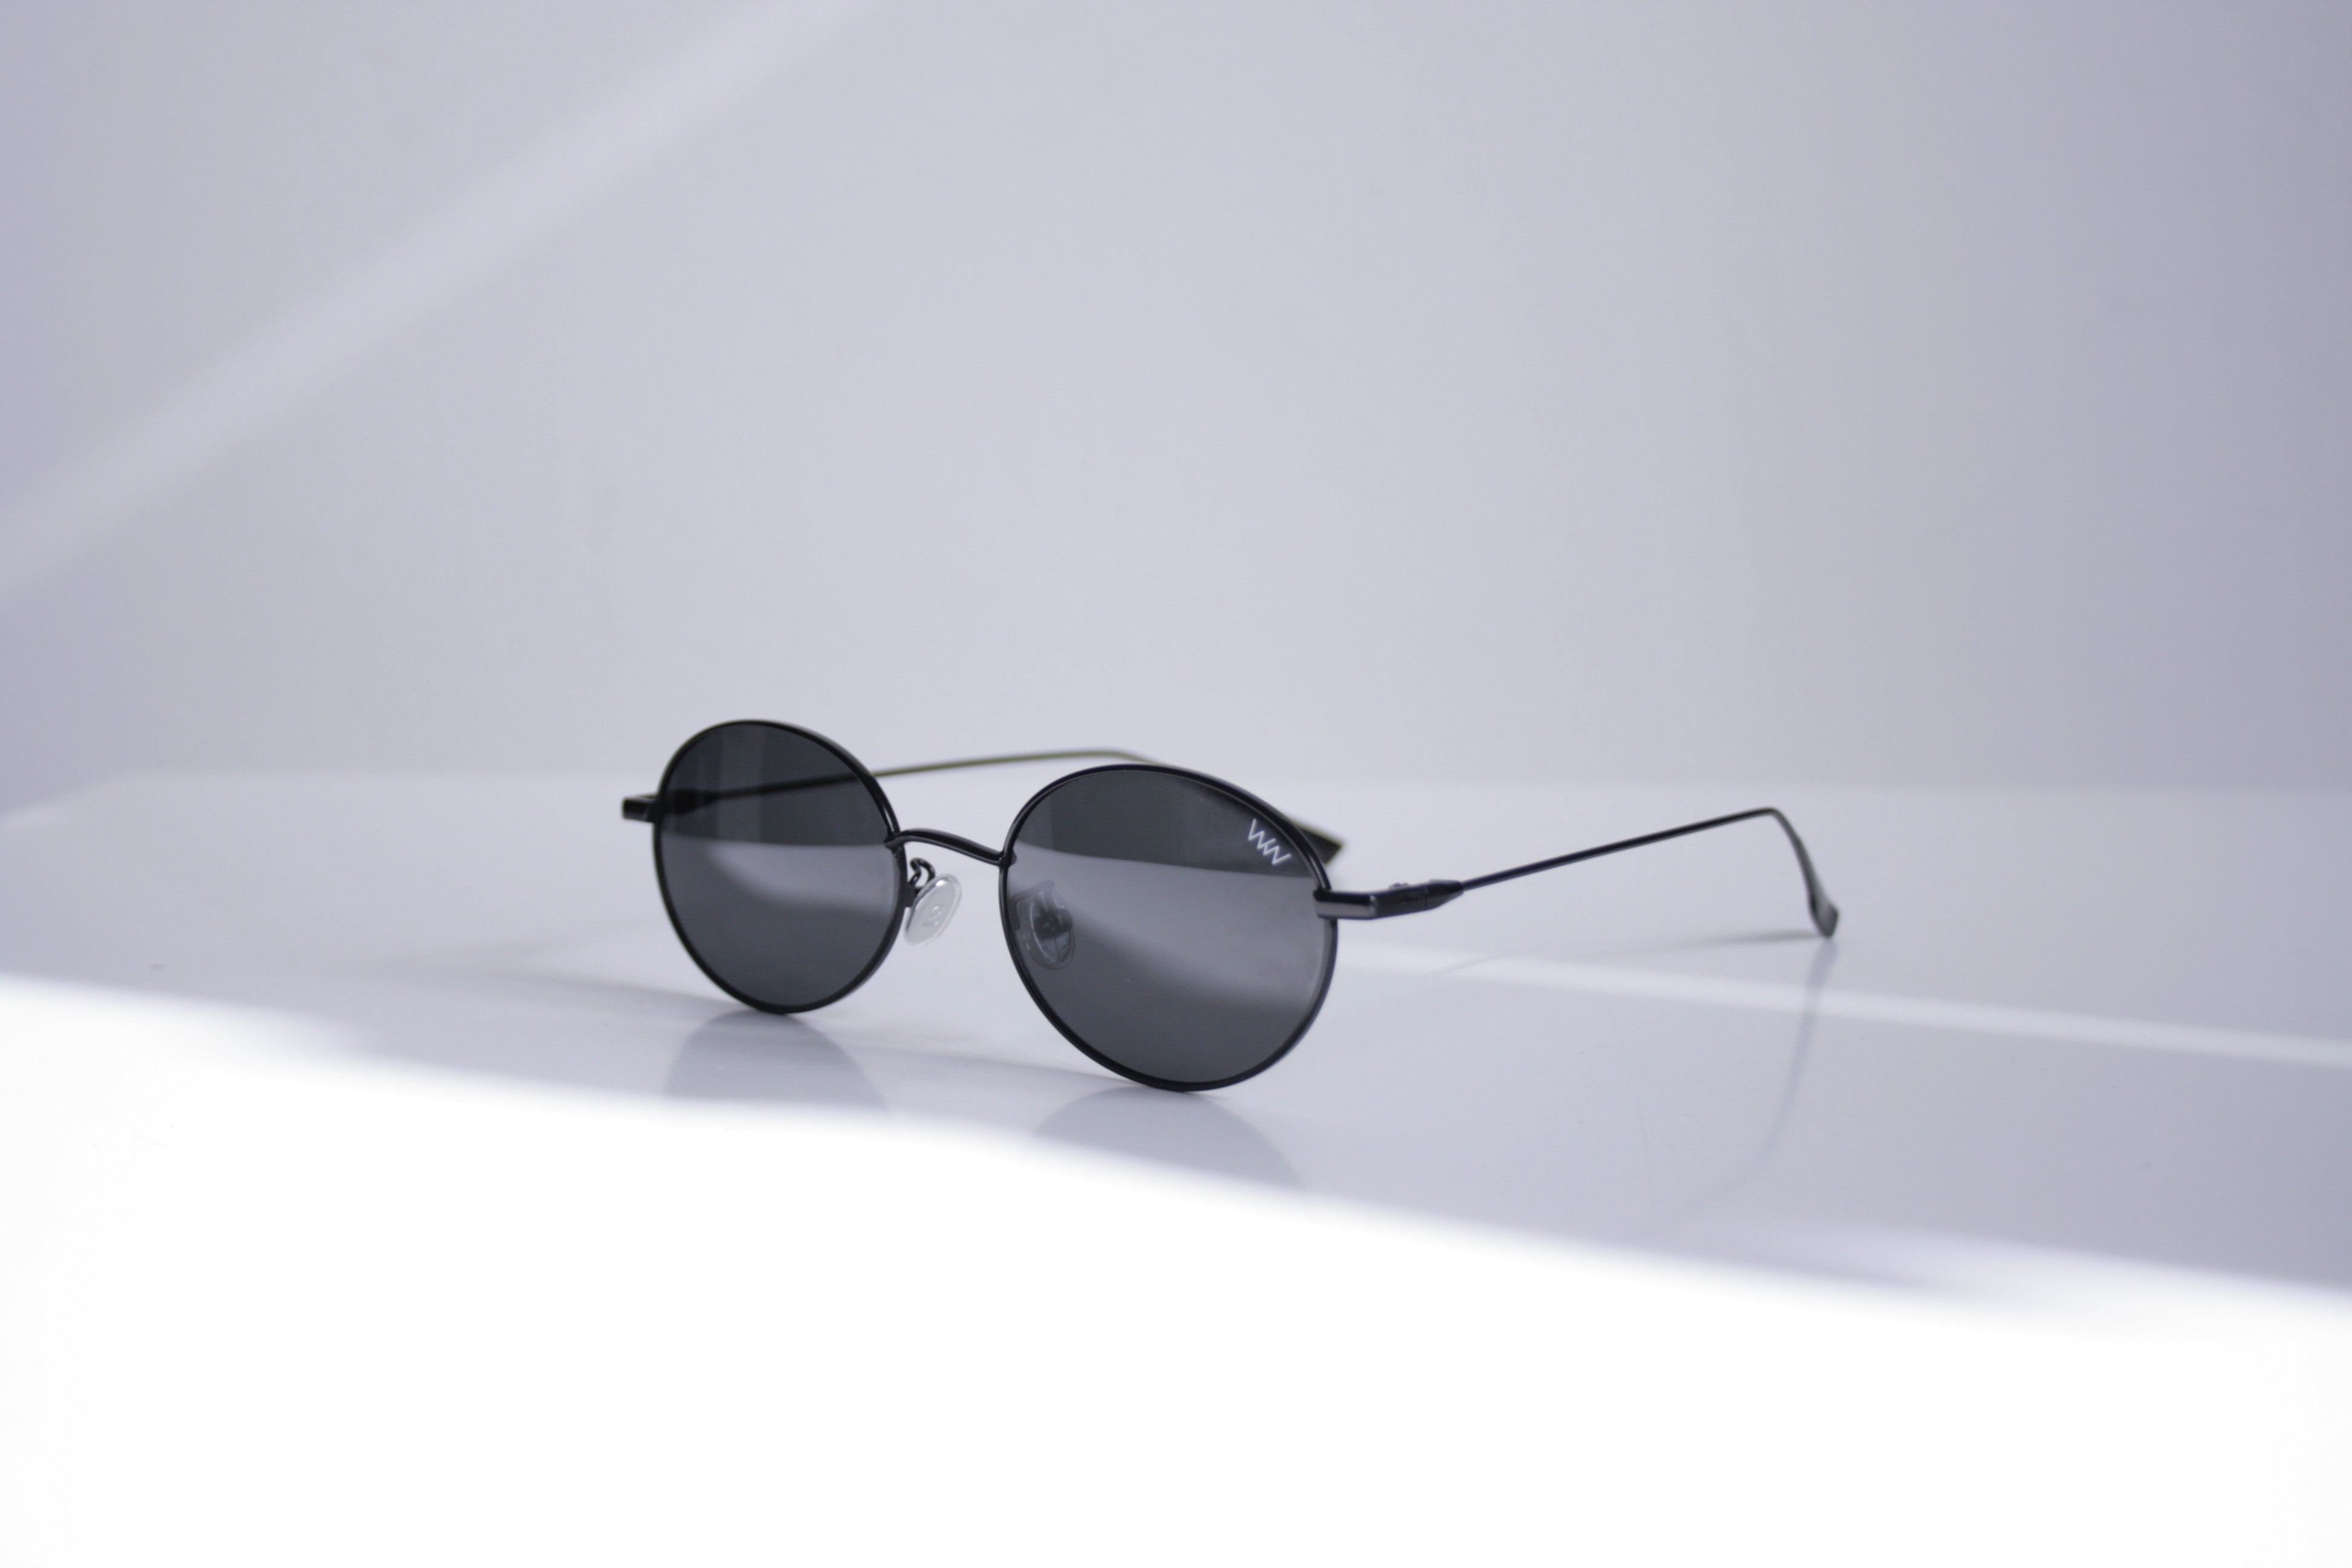 Wear Walters Urban - Metal frame sunglasses – Wear Walters Eyewear